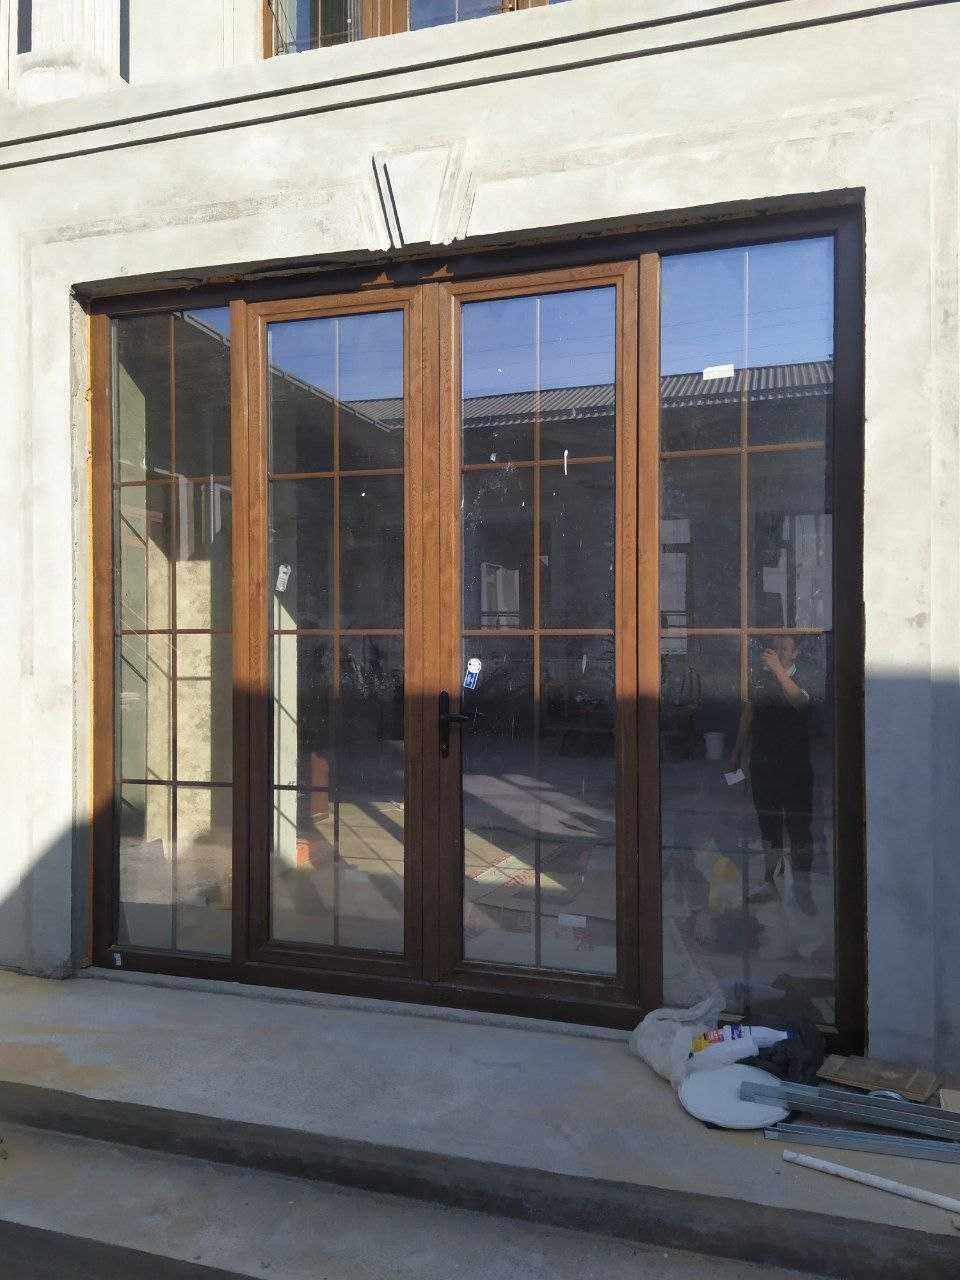 Качественные Акфа окна и двери из фабрики имзо | Термо двери